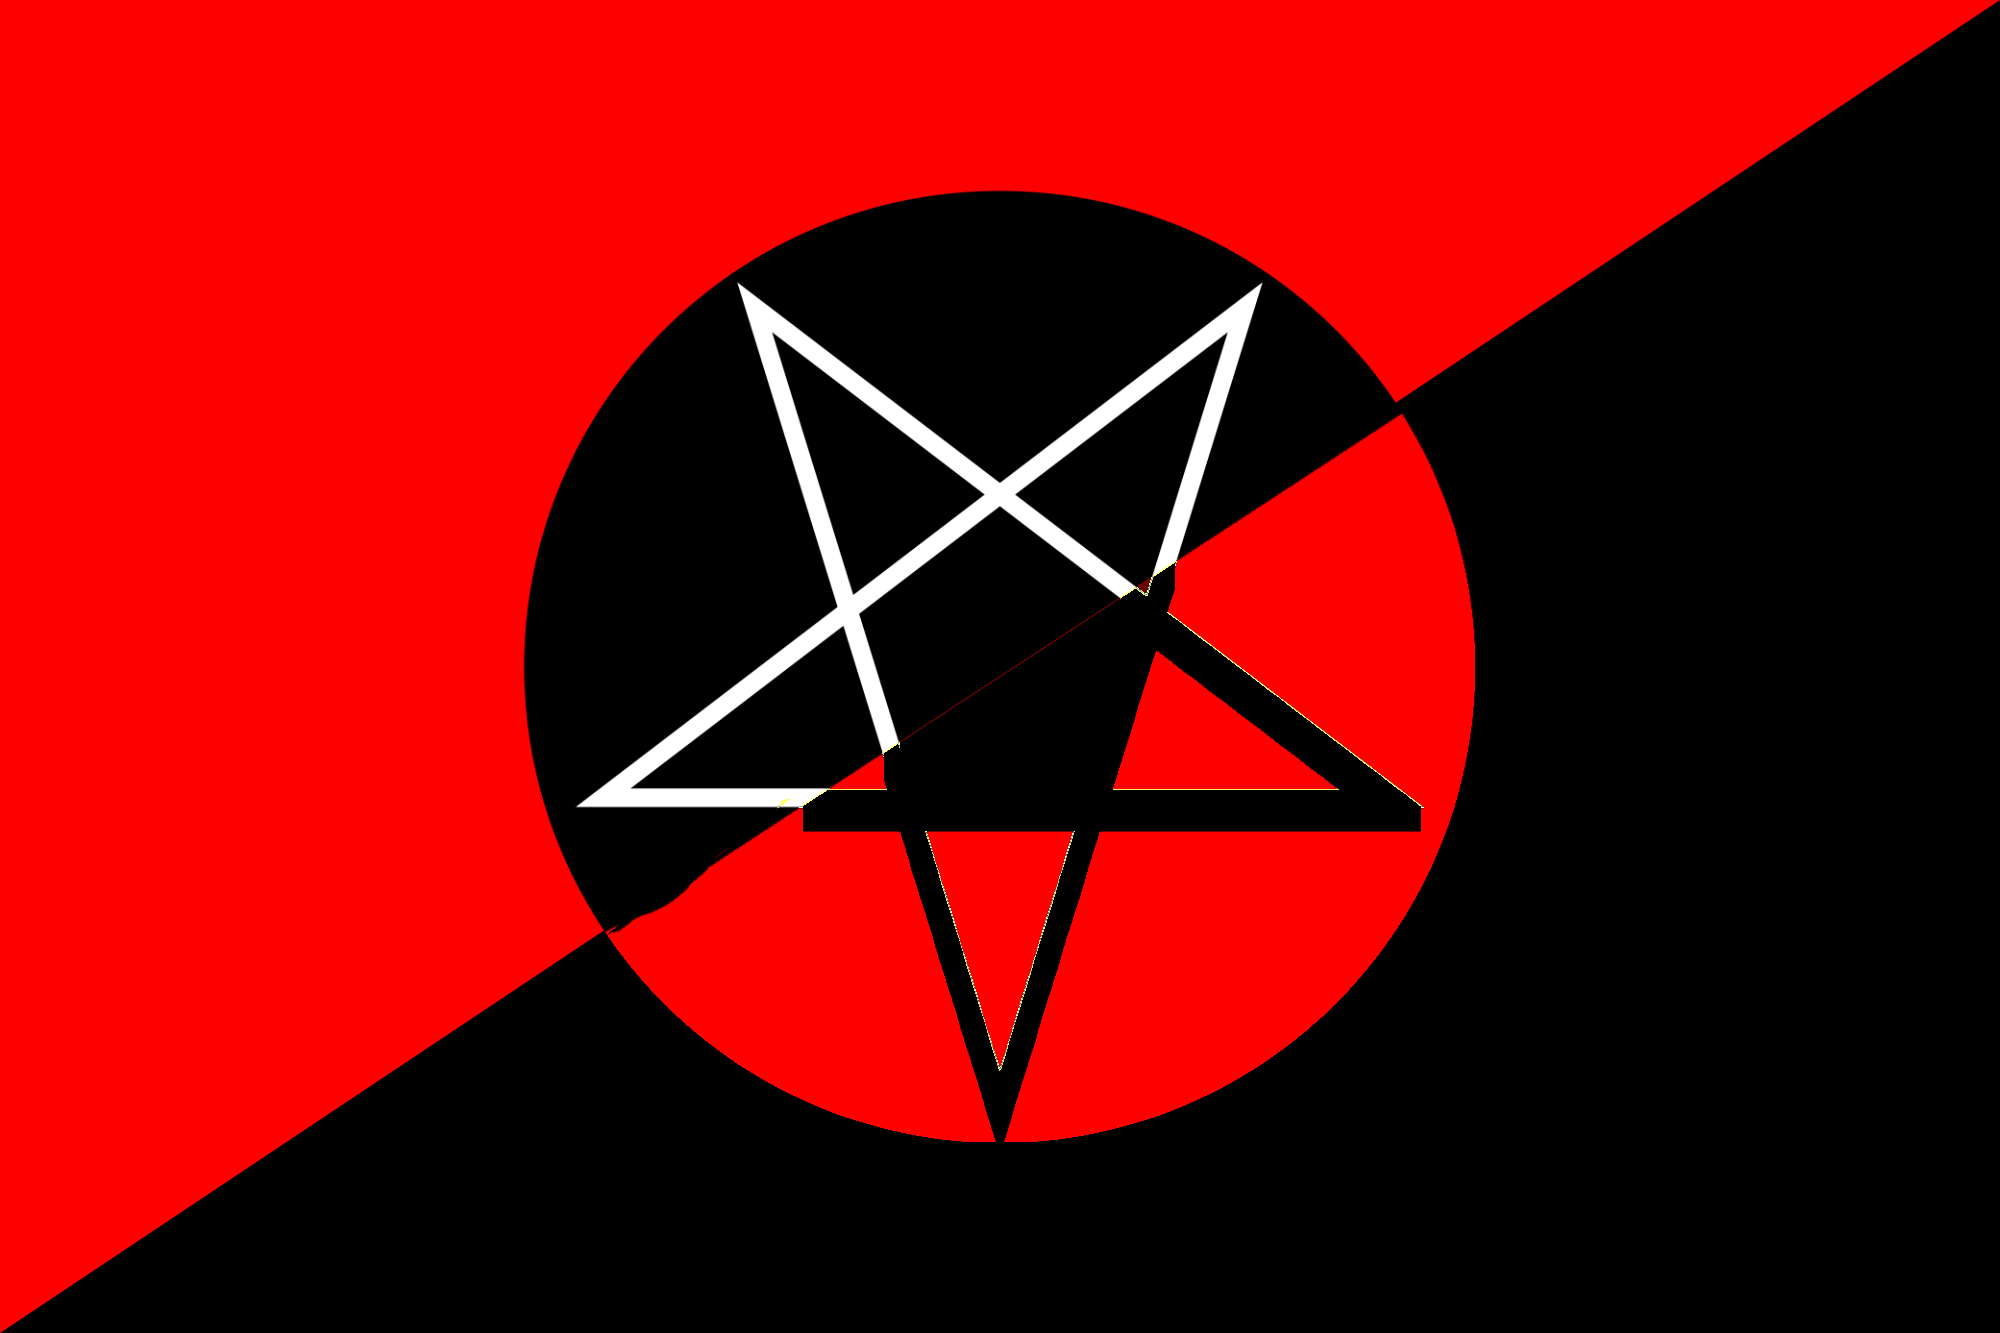 Традиционный сатанизм идеология. Флаг анархо-синдикалистов. Анархо-Коммунистический флаг. Флаг анархо-синдикалистов Испании. Технократический анархо коммунизм.